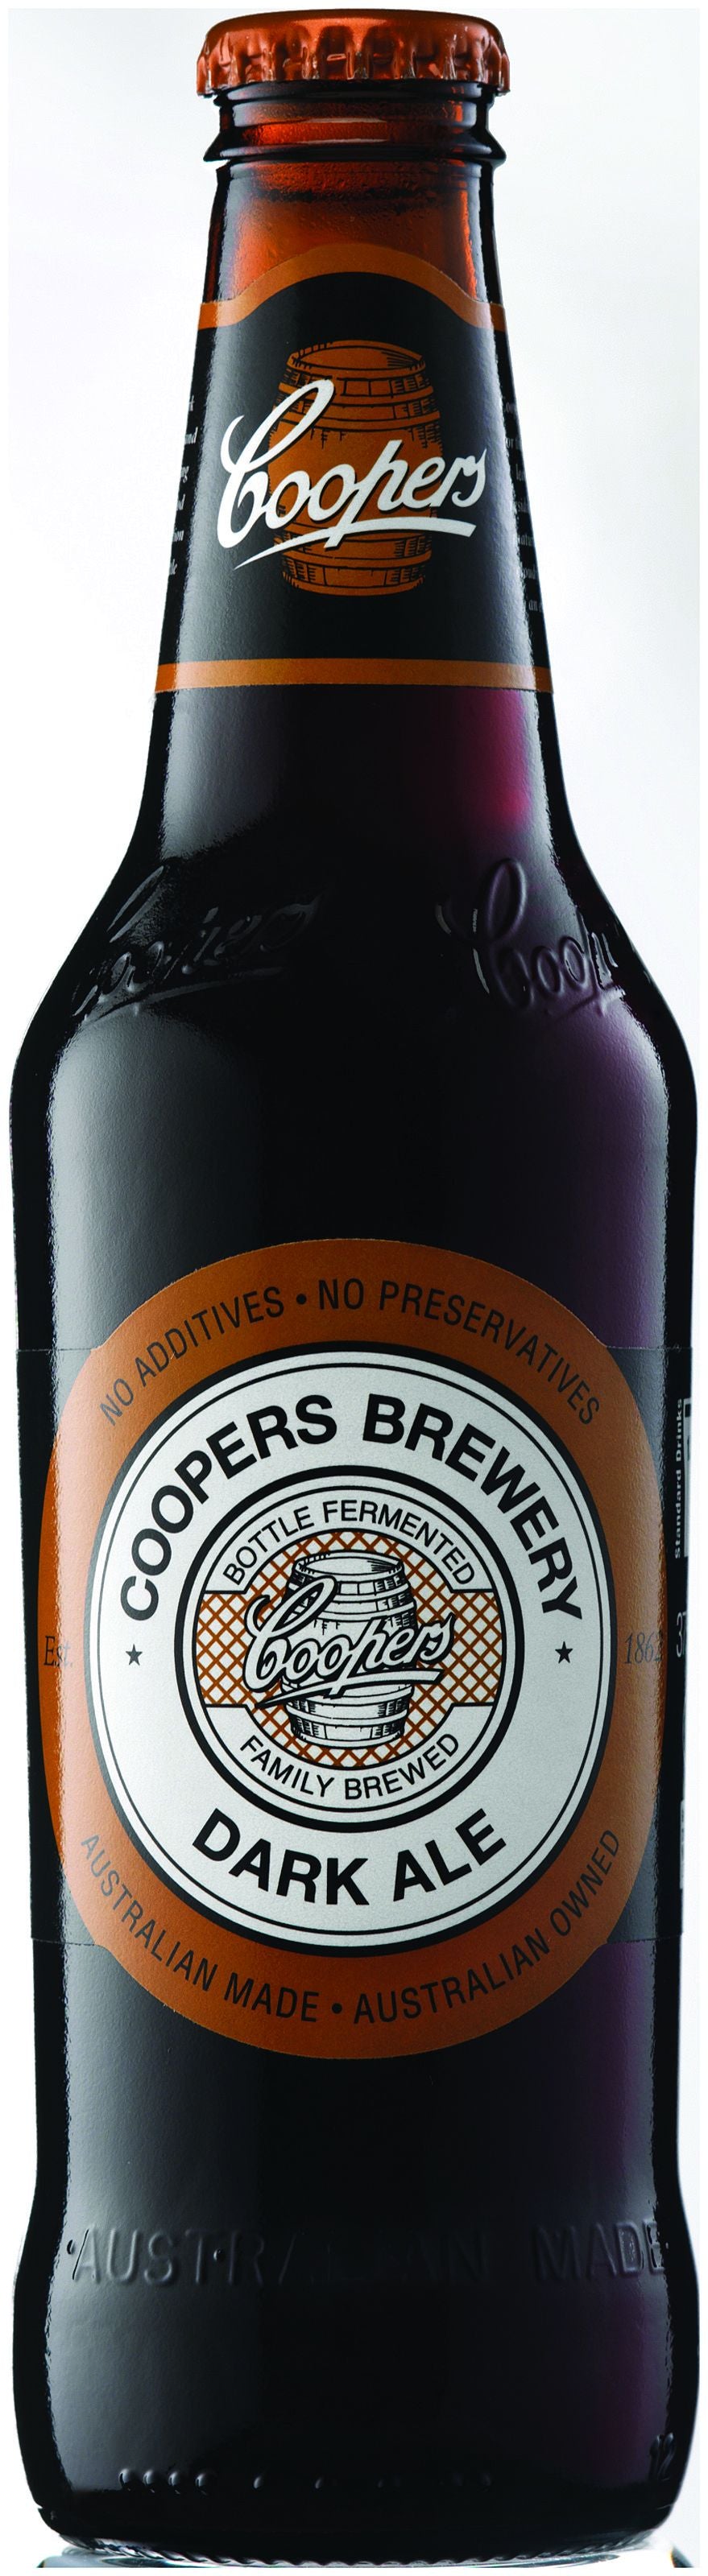 Coopers Dark Ale 6 pack